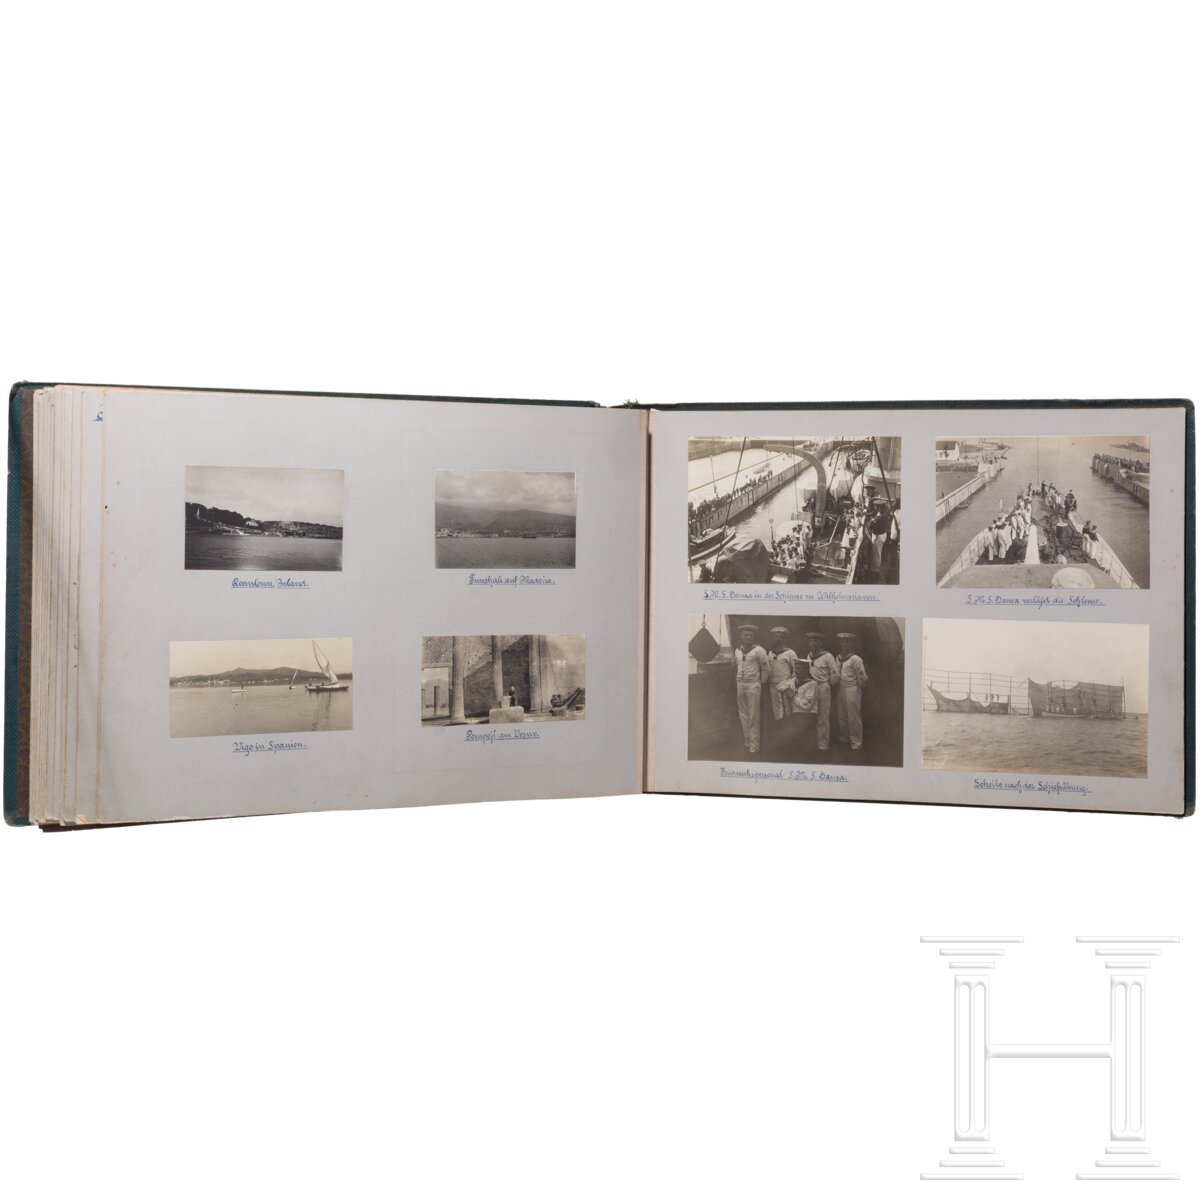 Großes Fotoalbum eines Angehörigen der Kaiserlichen Marine in China etc., um 1900 - Image 6 of 9